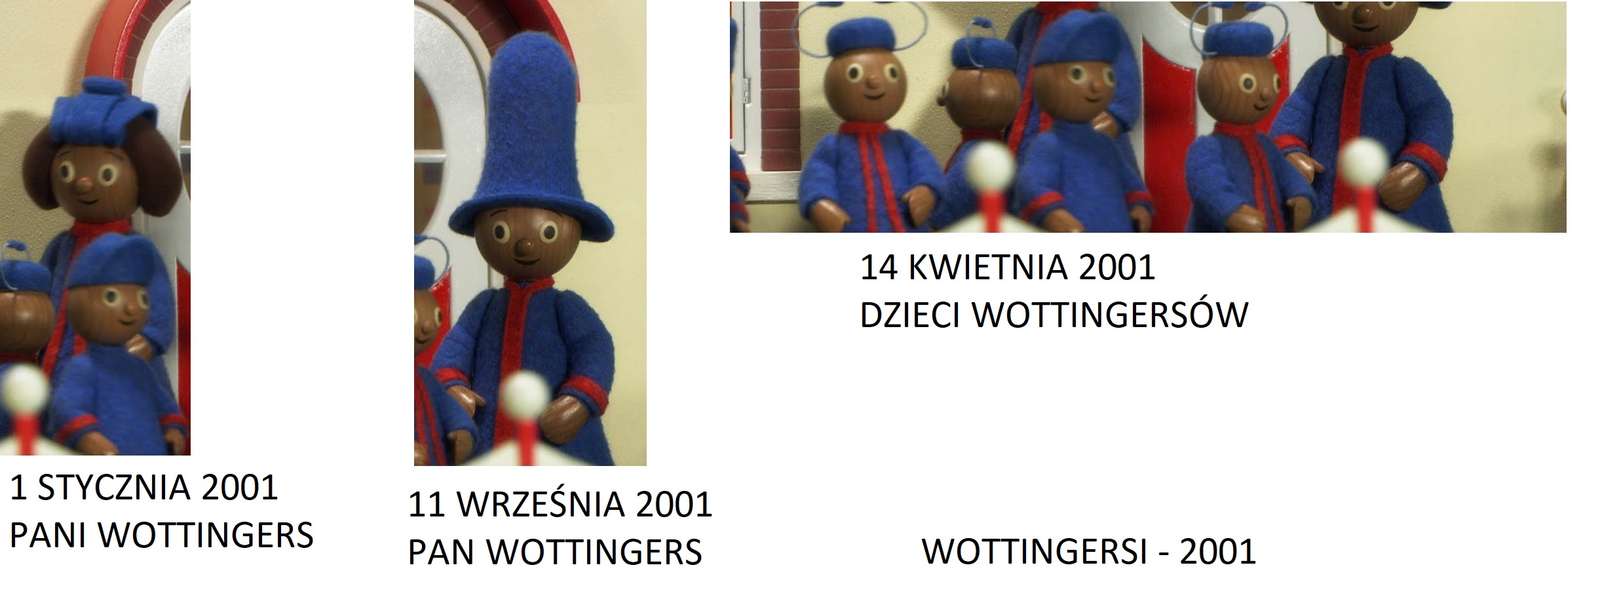 WOTTINGERS - 2001 puzzle online din fotografie